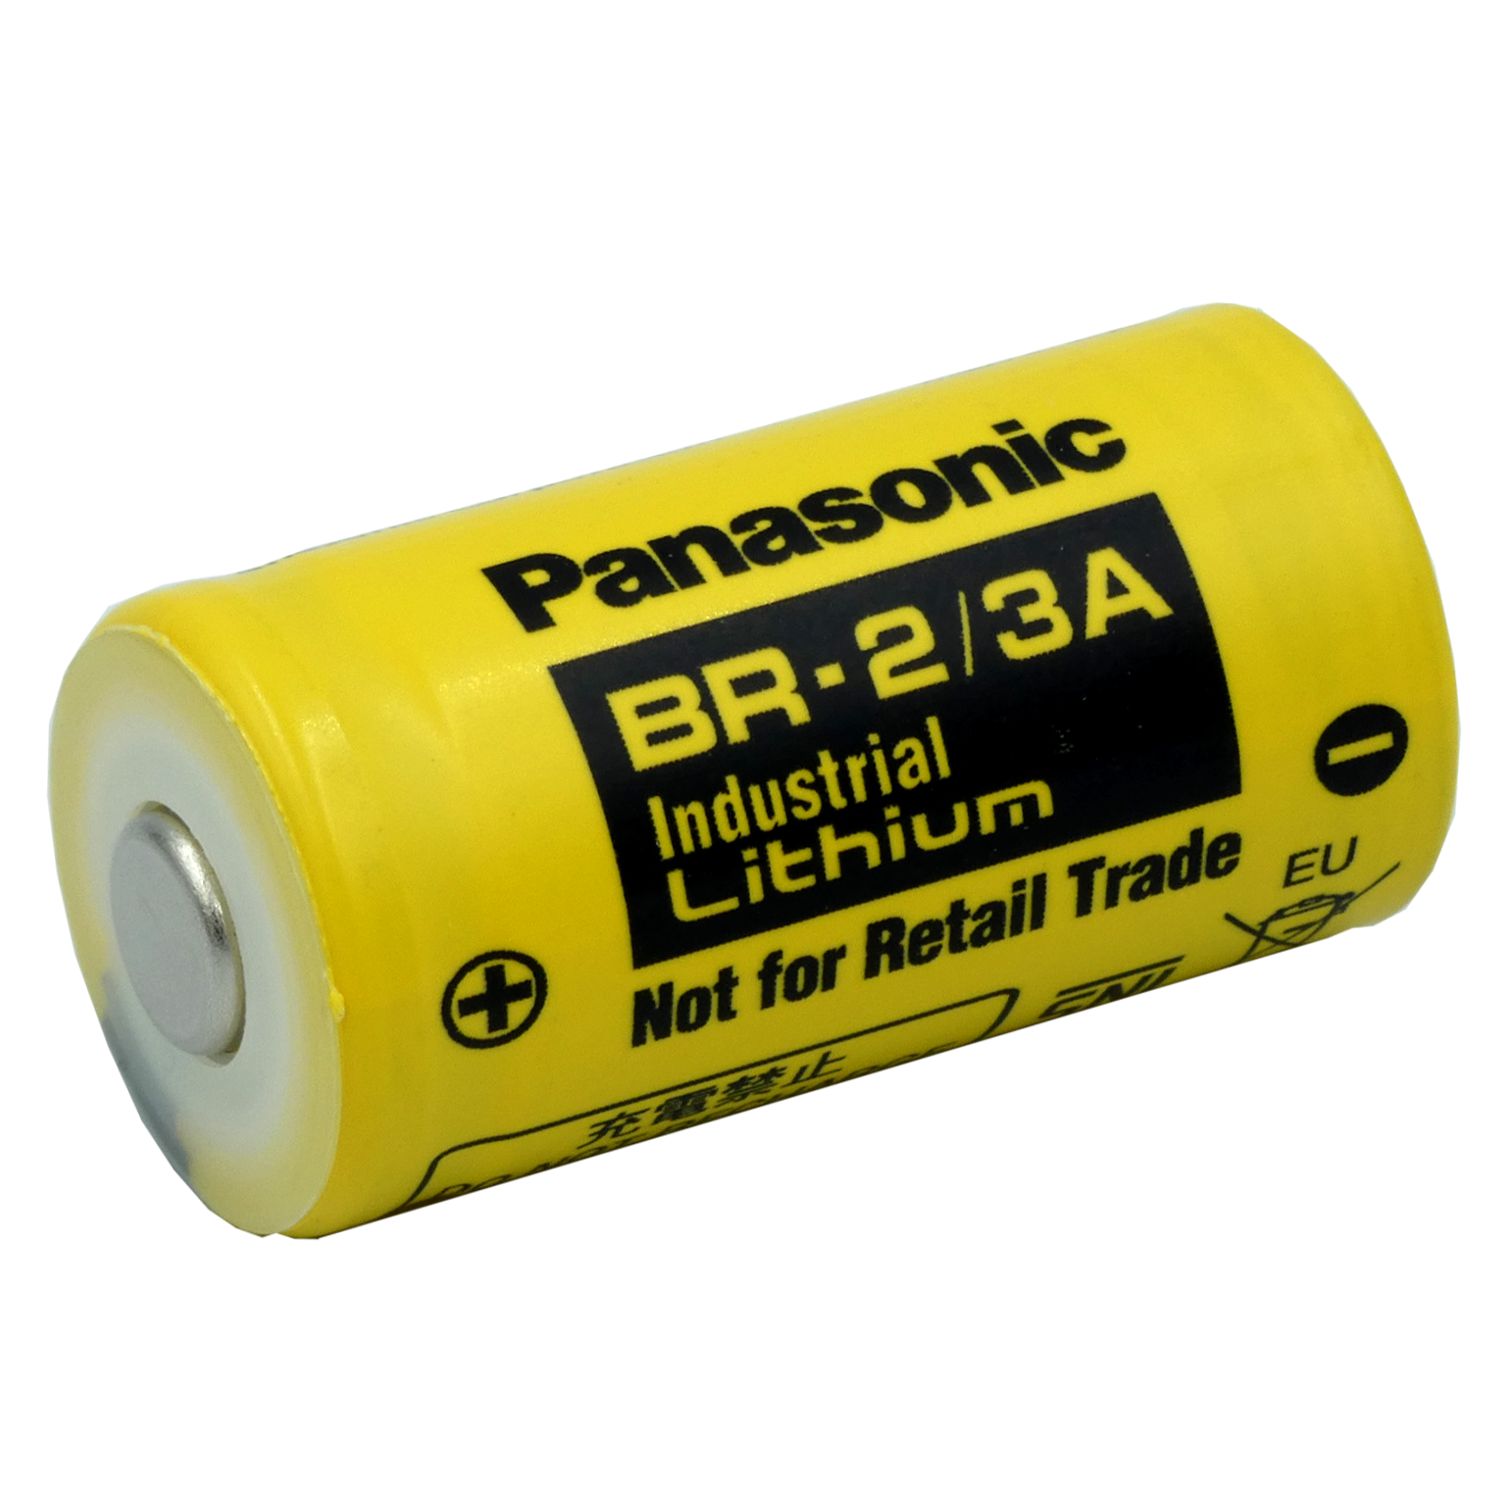 Panasonic Lithium Batterie  BR-2/3A 3,0 Volt 1200mAh